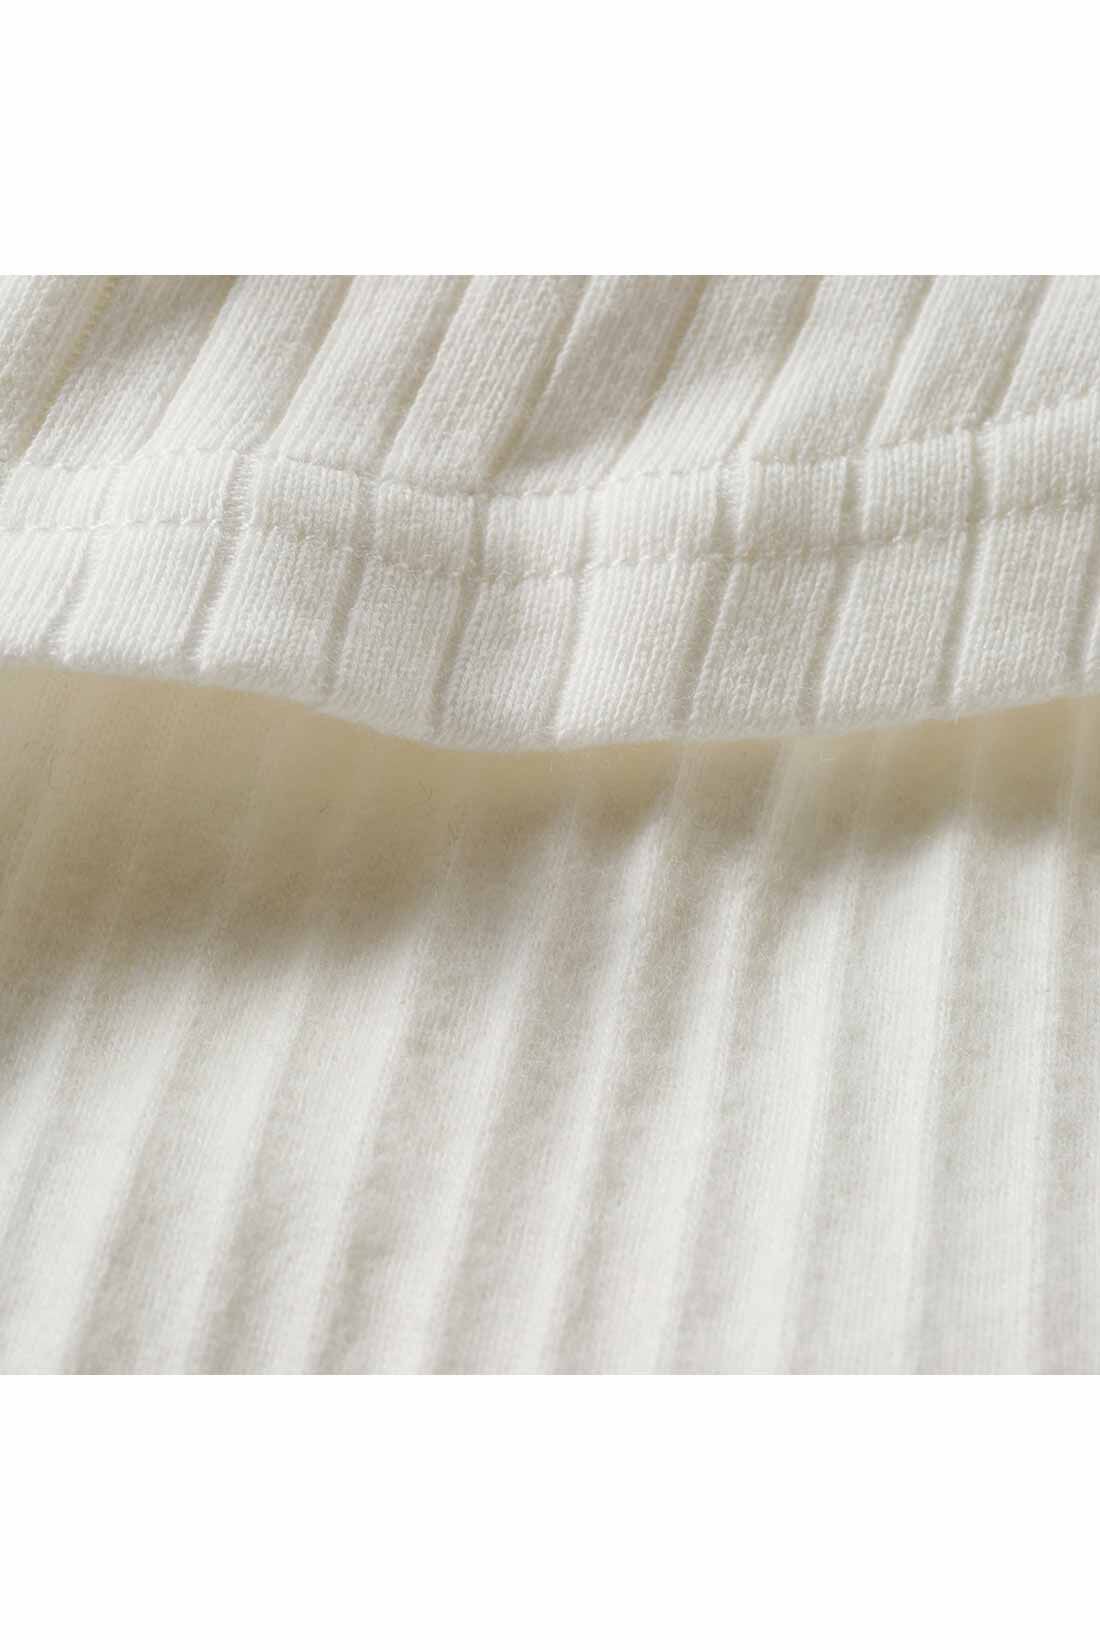 フェリシモコレクション|綿100％の吸湿発熱素材 「ほか綿」3種類のホワイトトップスの会|ほどよい厚みのあるほか綿を裏微起毛で仕上げたカットソー。